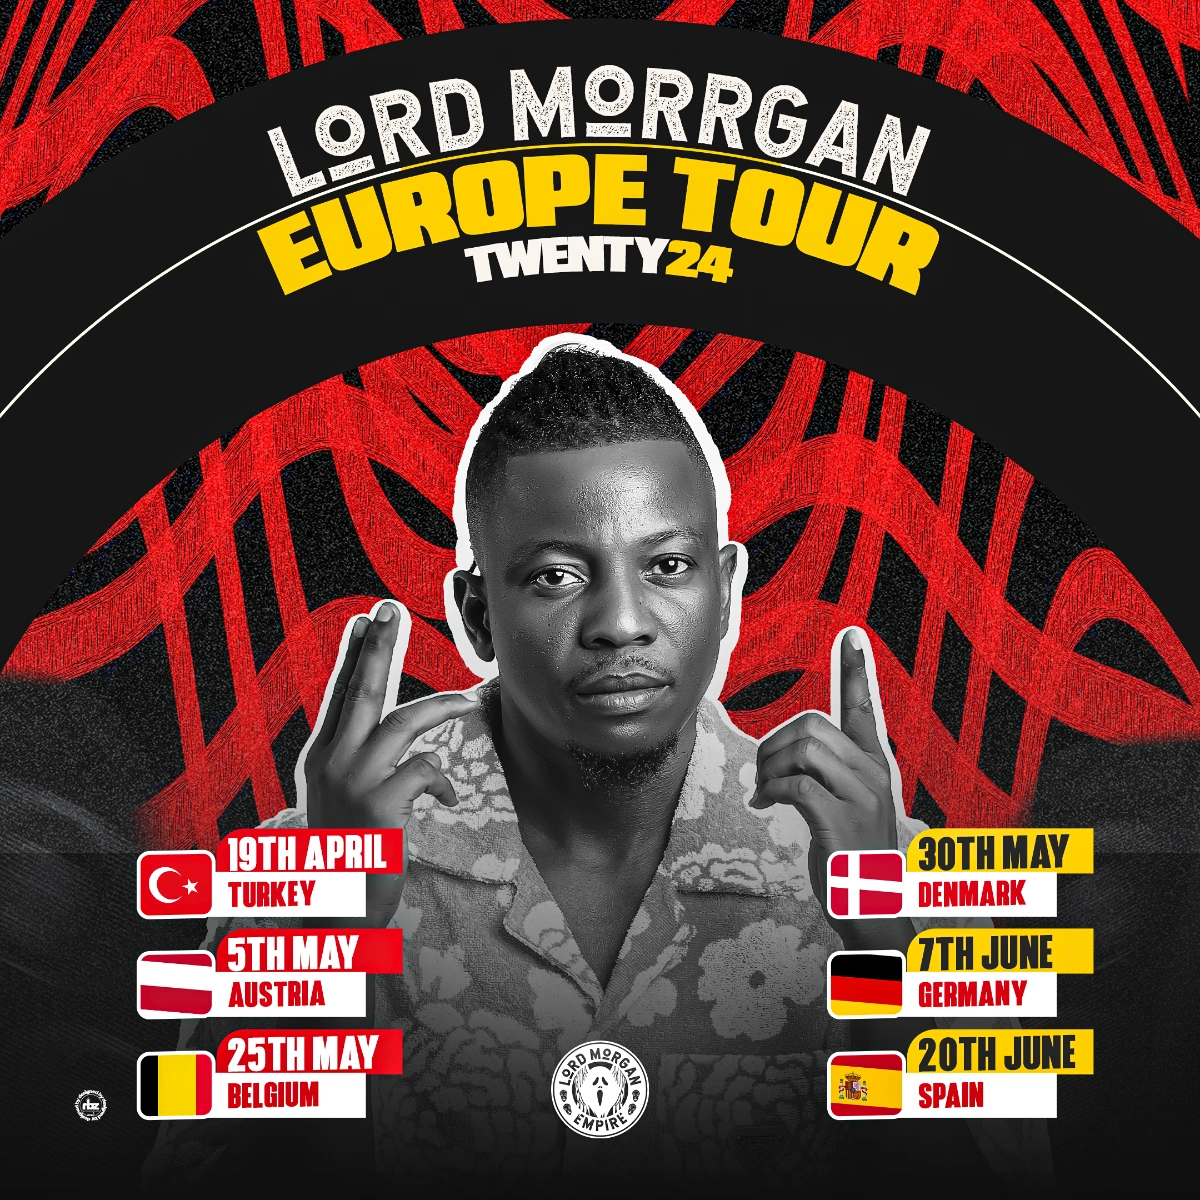 Lord Morrgan Europe Tour Twenty24.